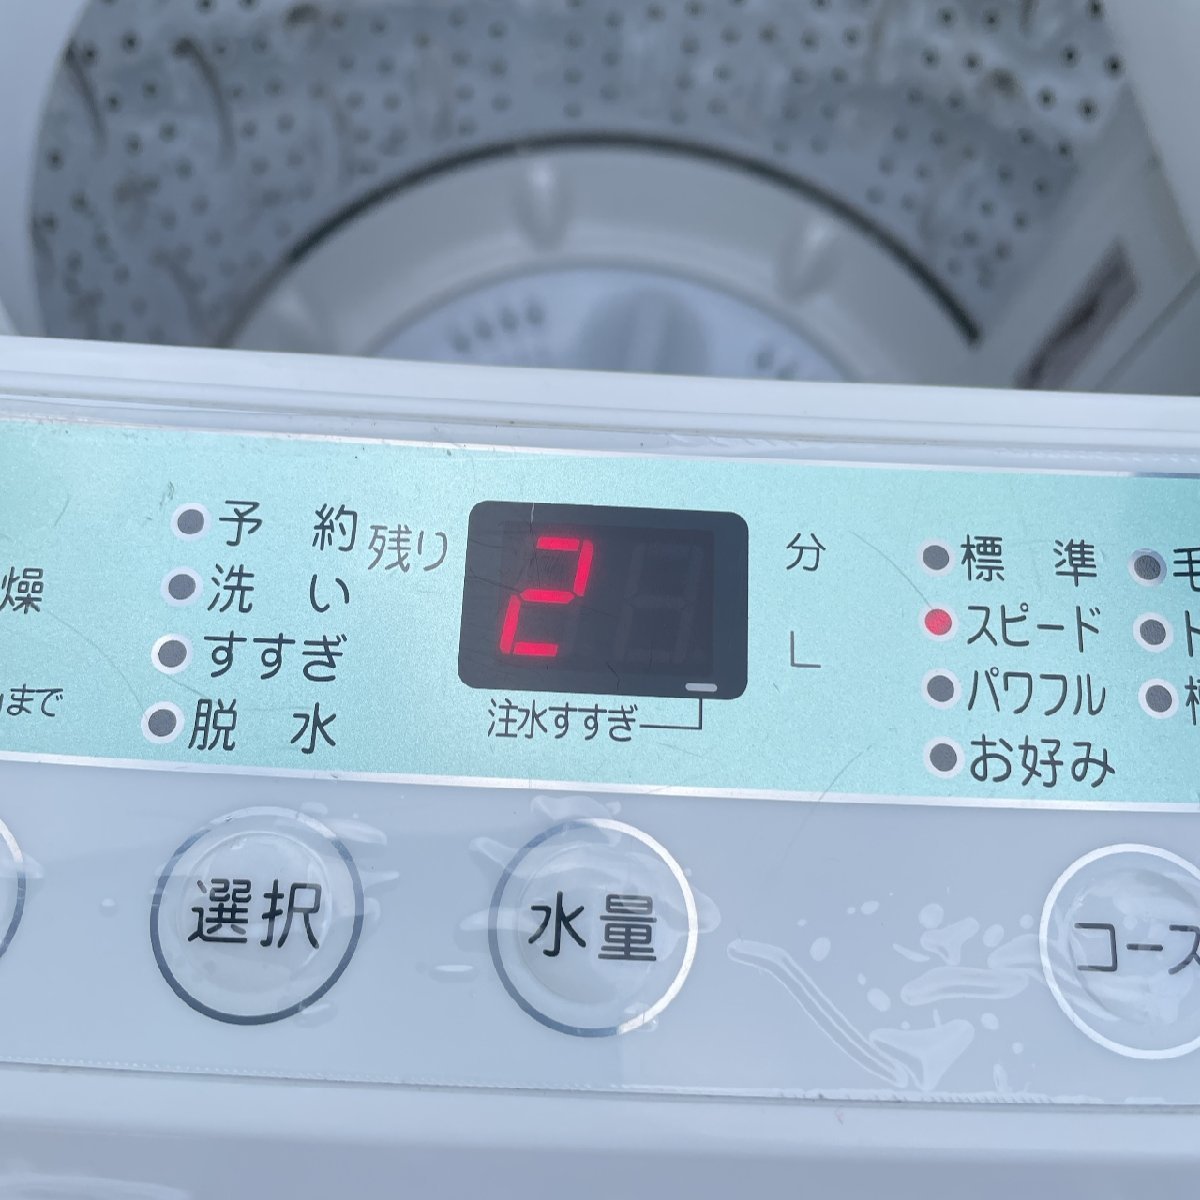 全自動洗濯機 4.5kg HERB Relax ヤマダ電機 2017年製 通電確認済 YWM-T45A1 YAMADA 外観・槽内側除菌済  店頭引取希望（北海道小樽）